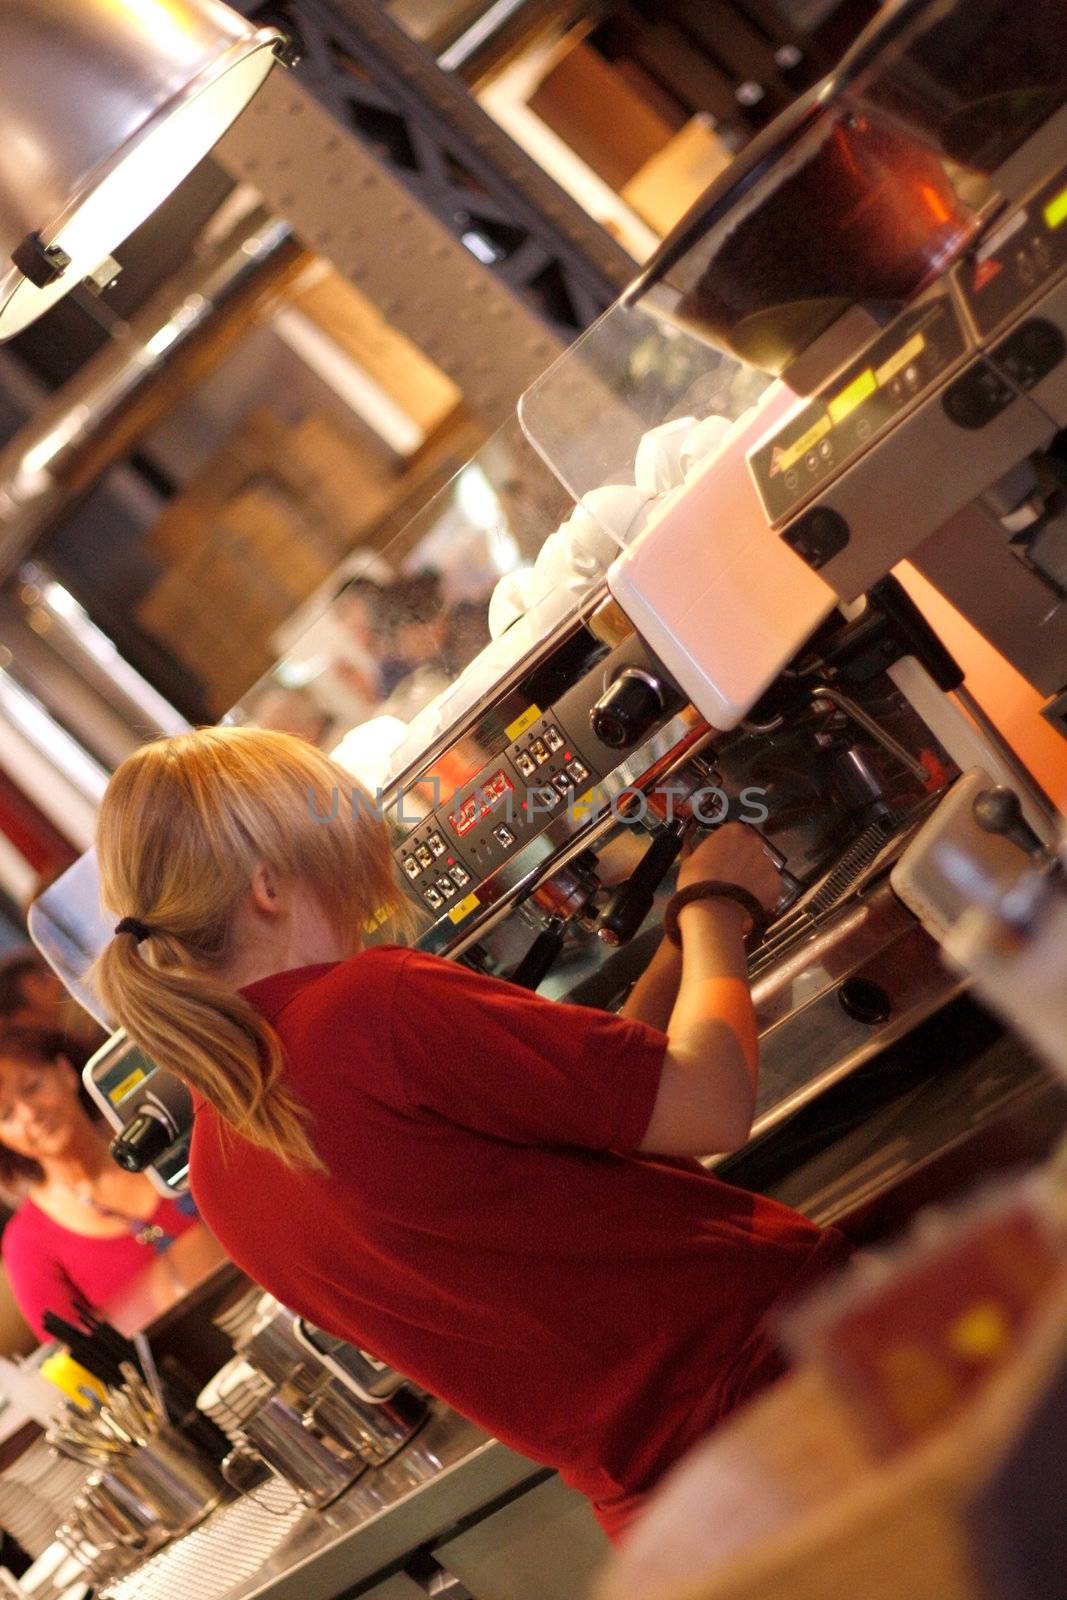 A professional espresso machine in a bar